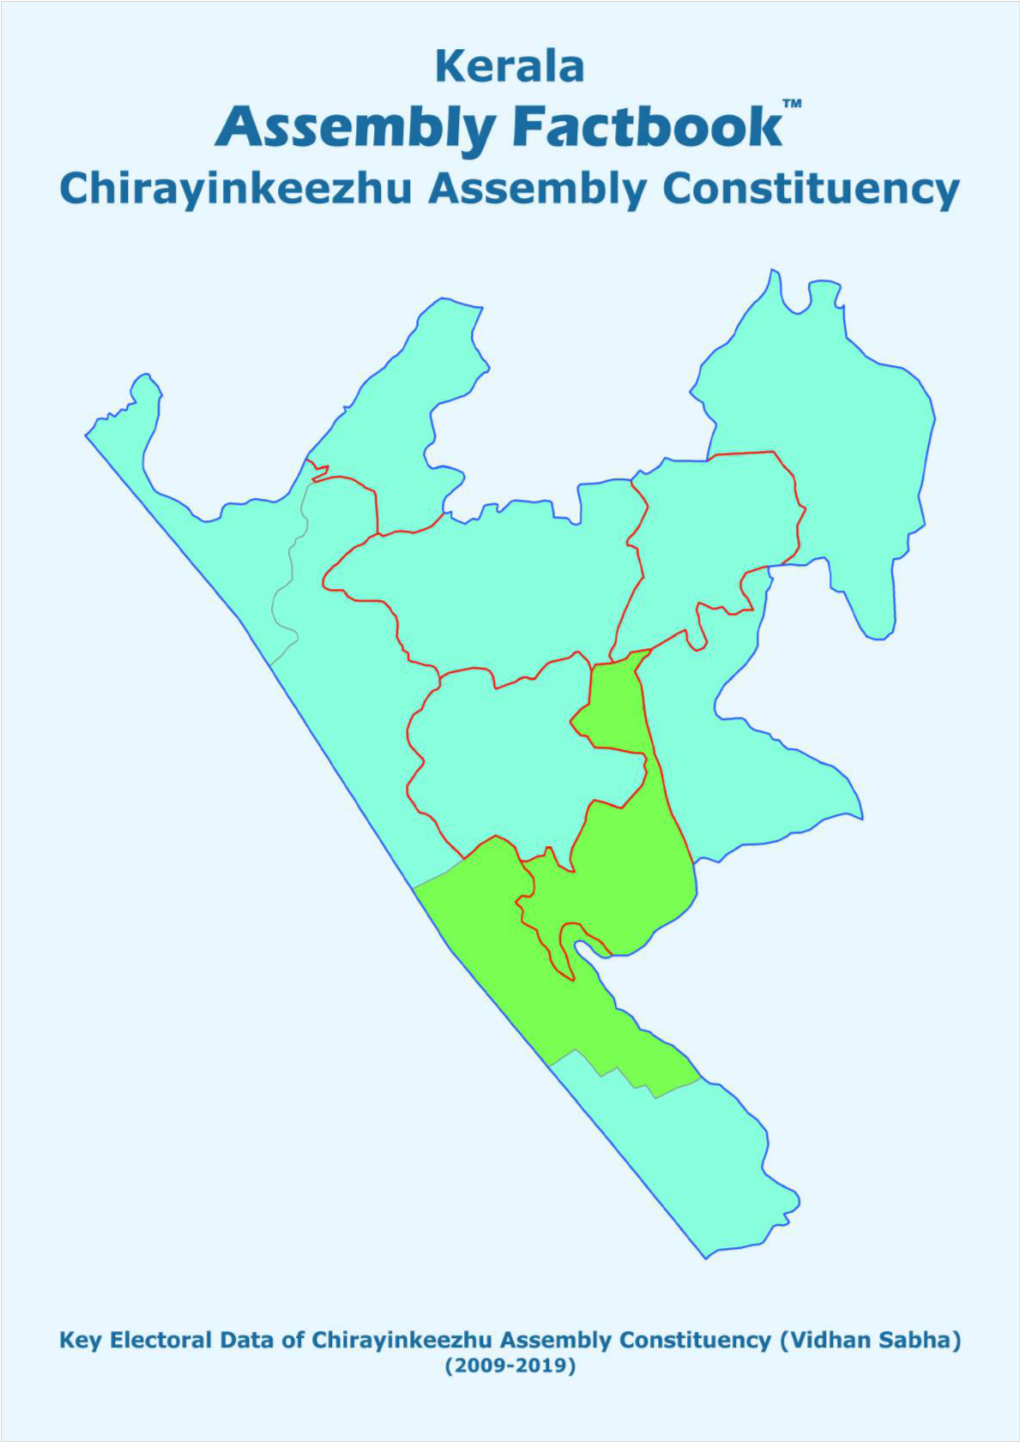 Chirayinkeezhu Assembly Kerala Factbook